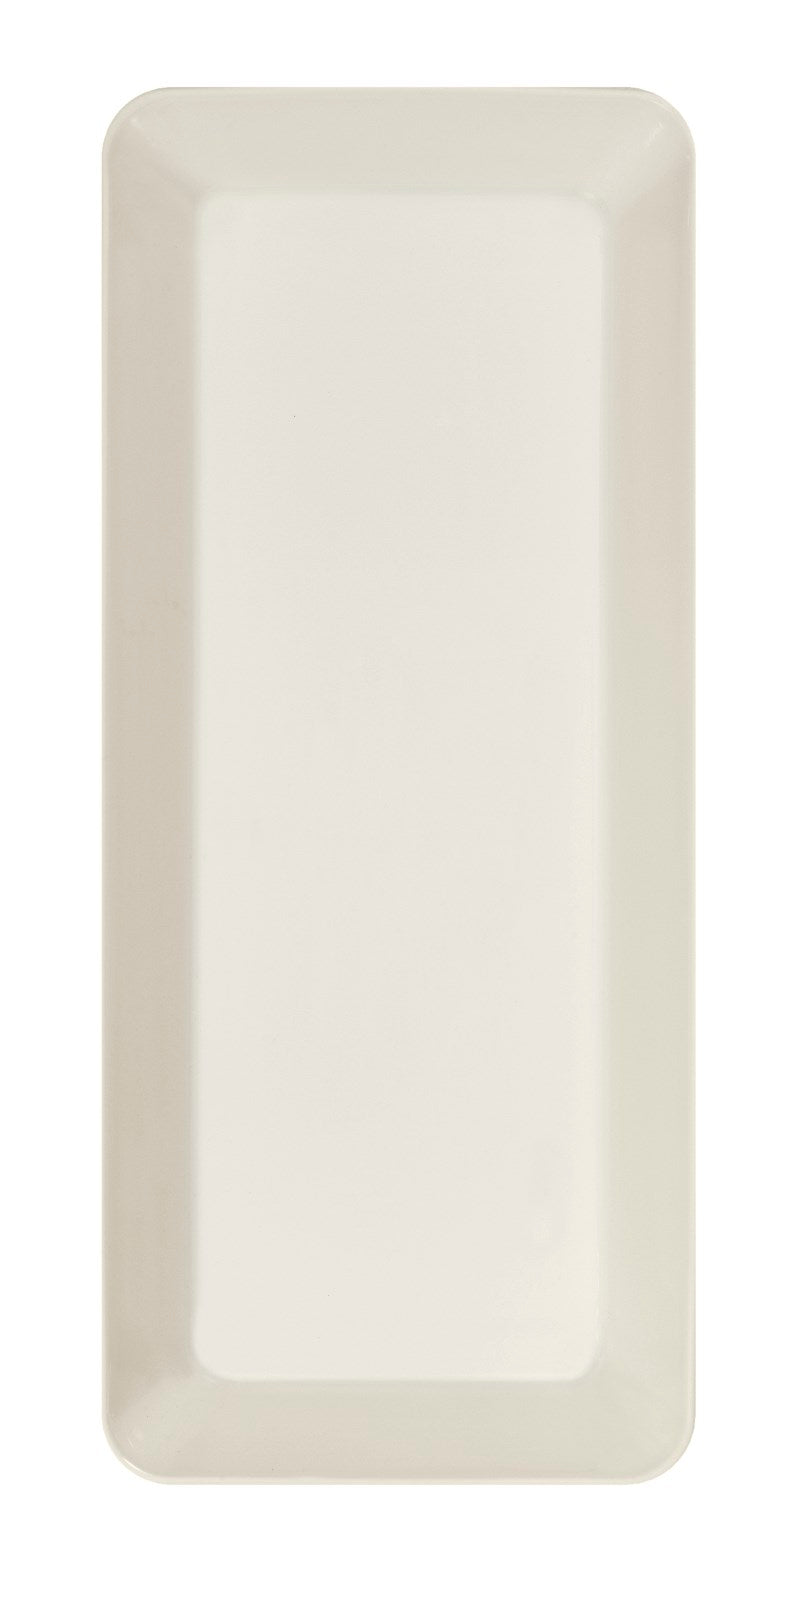 media image for Teema Serving Platter in Various Sizes design by Kaj Franck for Iittala 278